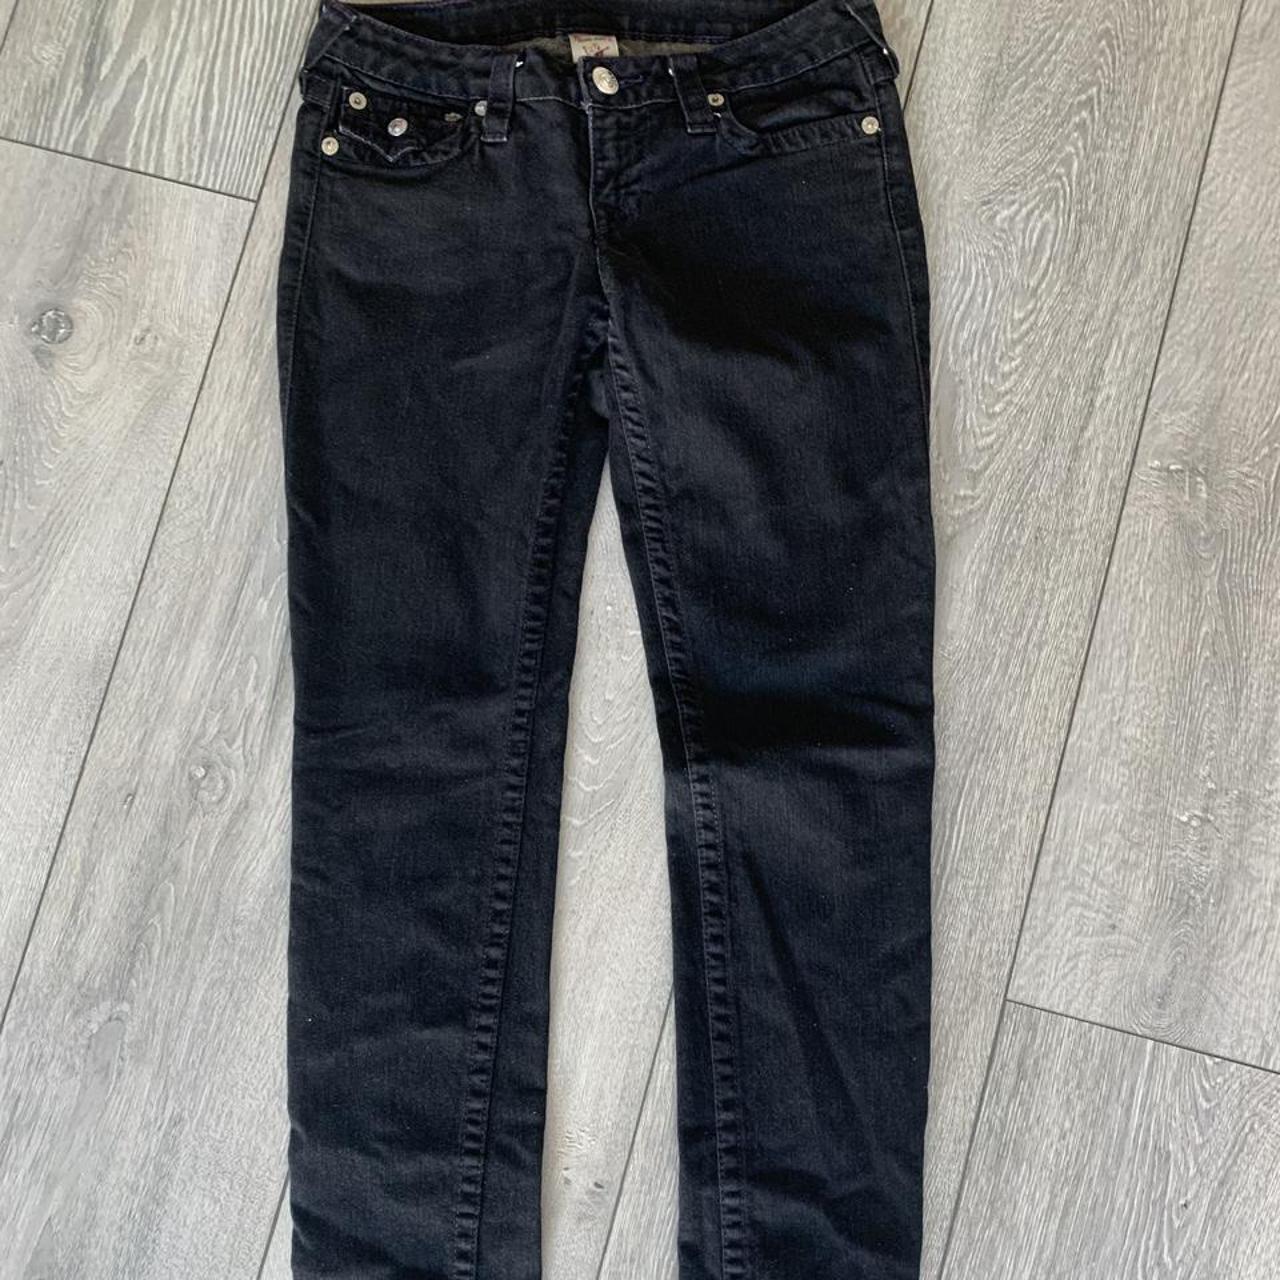 True Religion Black Skinny Jeans size 28!! Great... - Depop